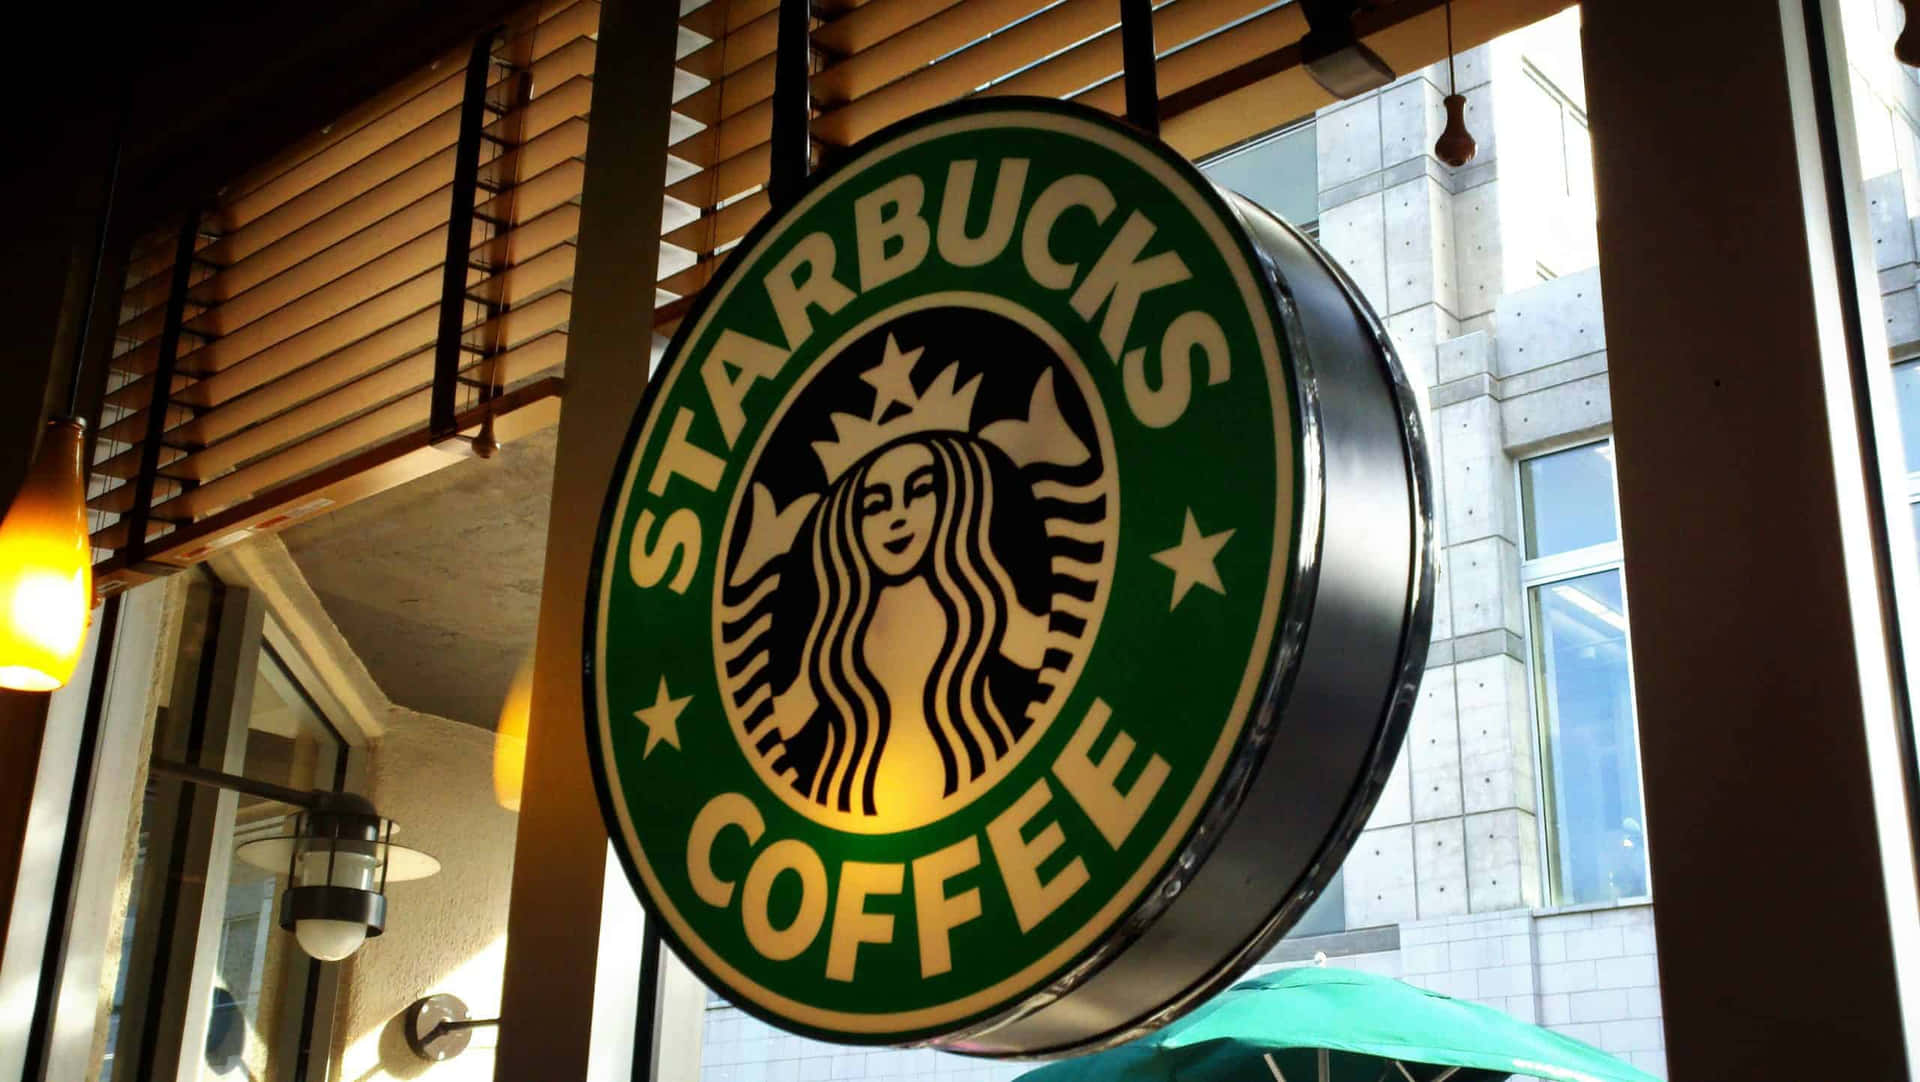 Enklassisk Starbucks Kopp Kaffe För Den Perfekta Morgonen